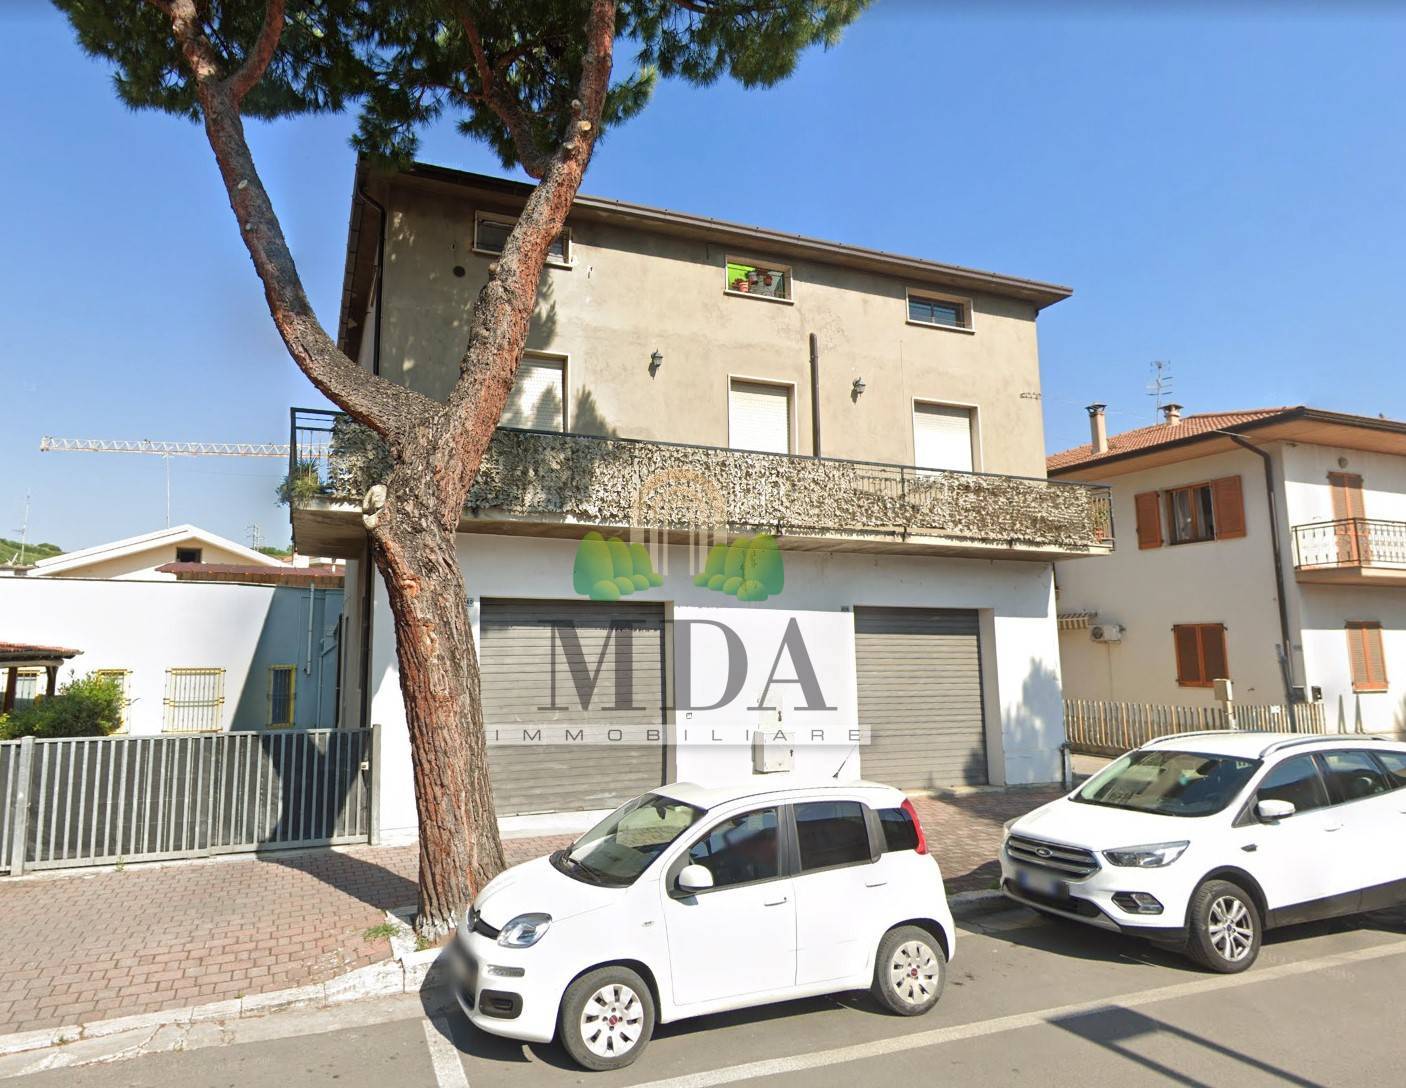 Appartamento in vendita a Martinsicuro, 4 locali, zona Località: VillaRosa, prezzo € 75.000 | PortaleAgenzieImmobiliari.it